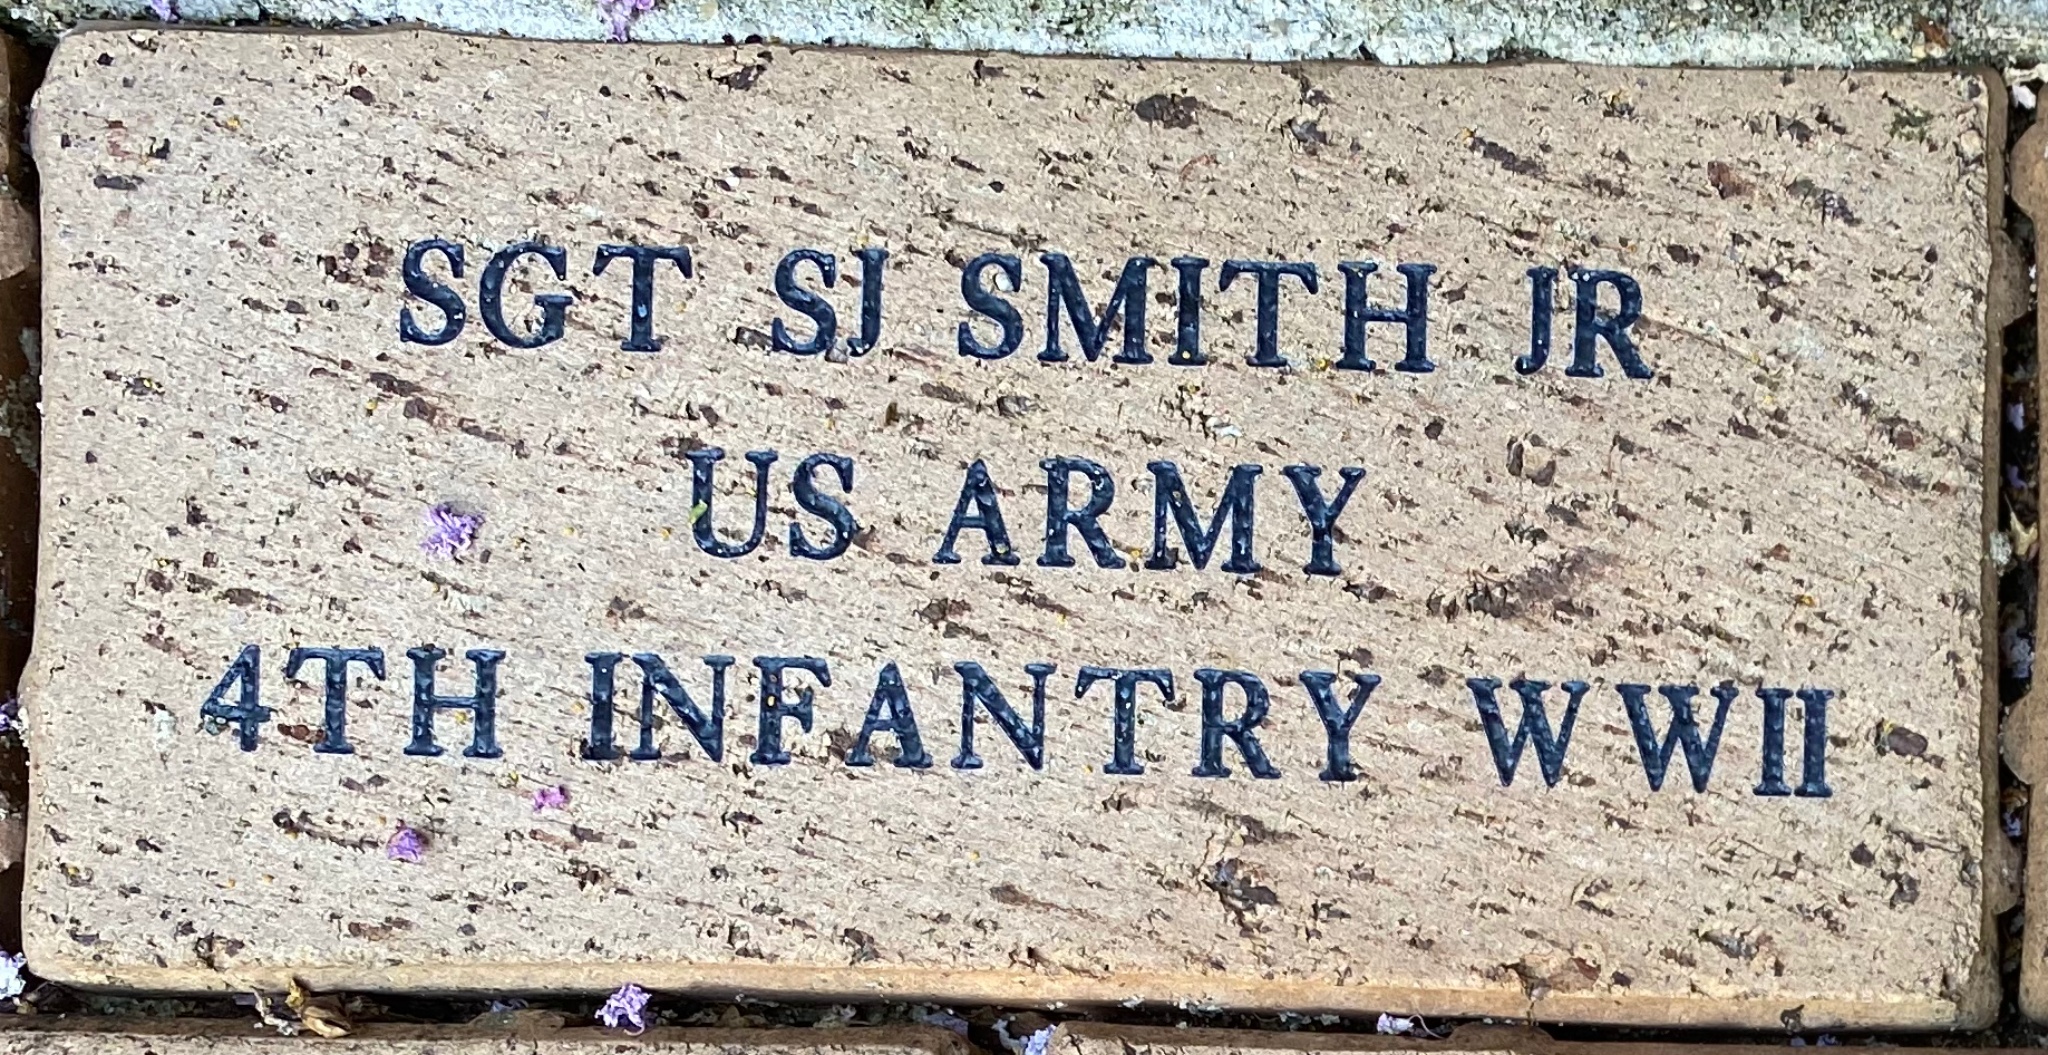 SGT SJ SMITH JR US ARMY 4TH INFANTRY WWII